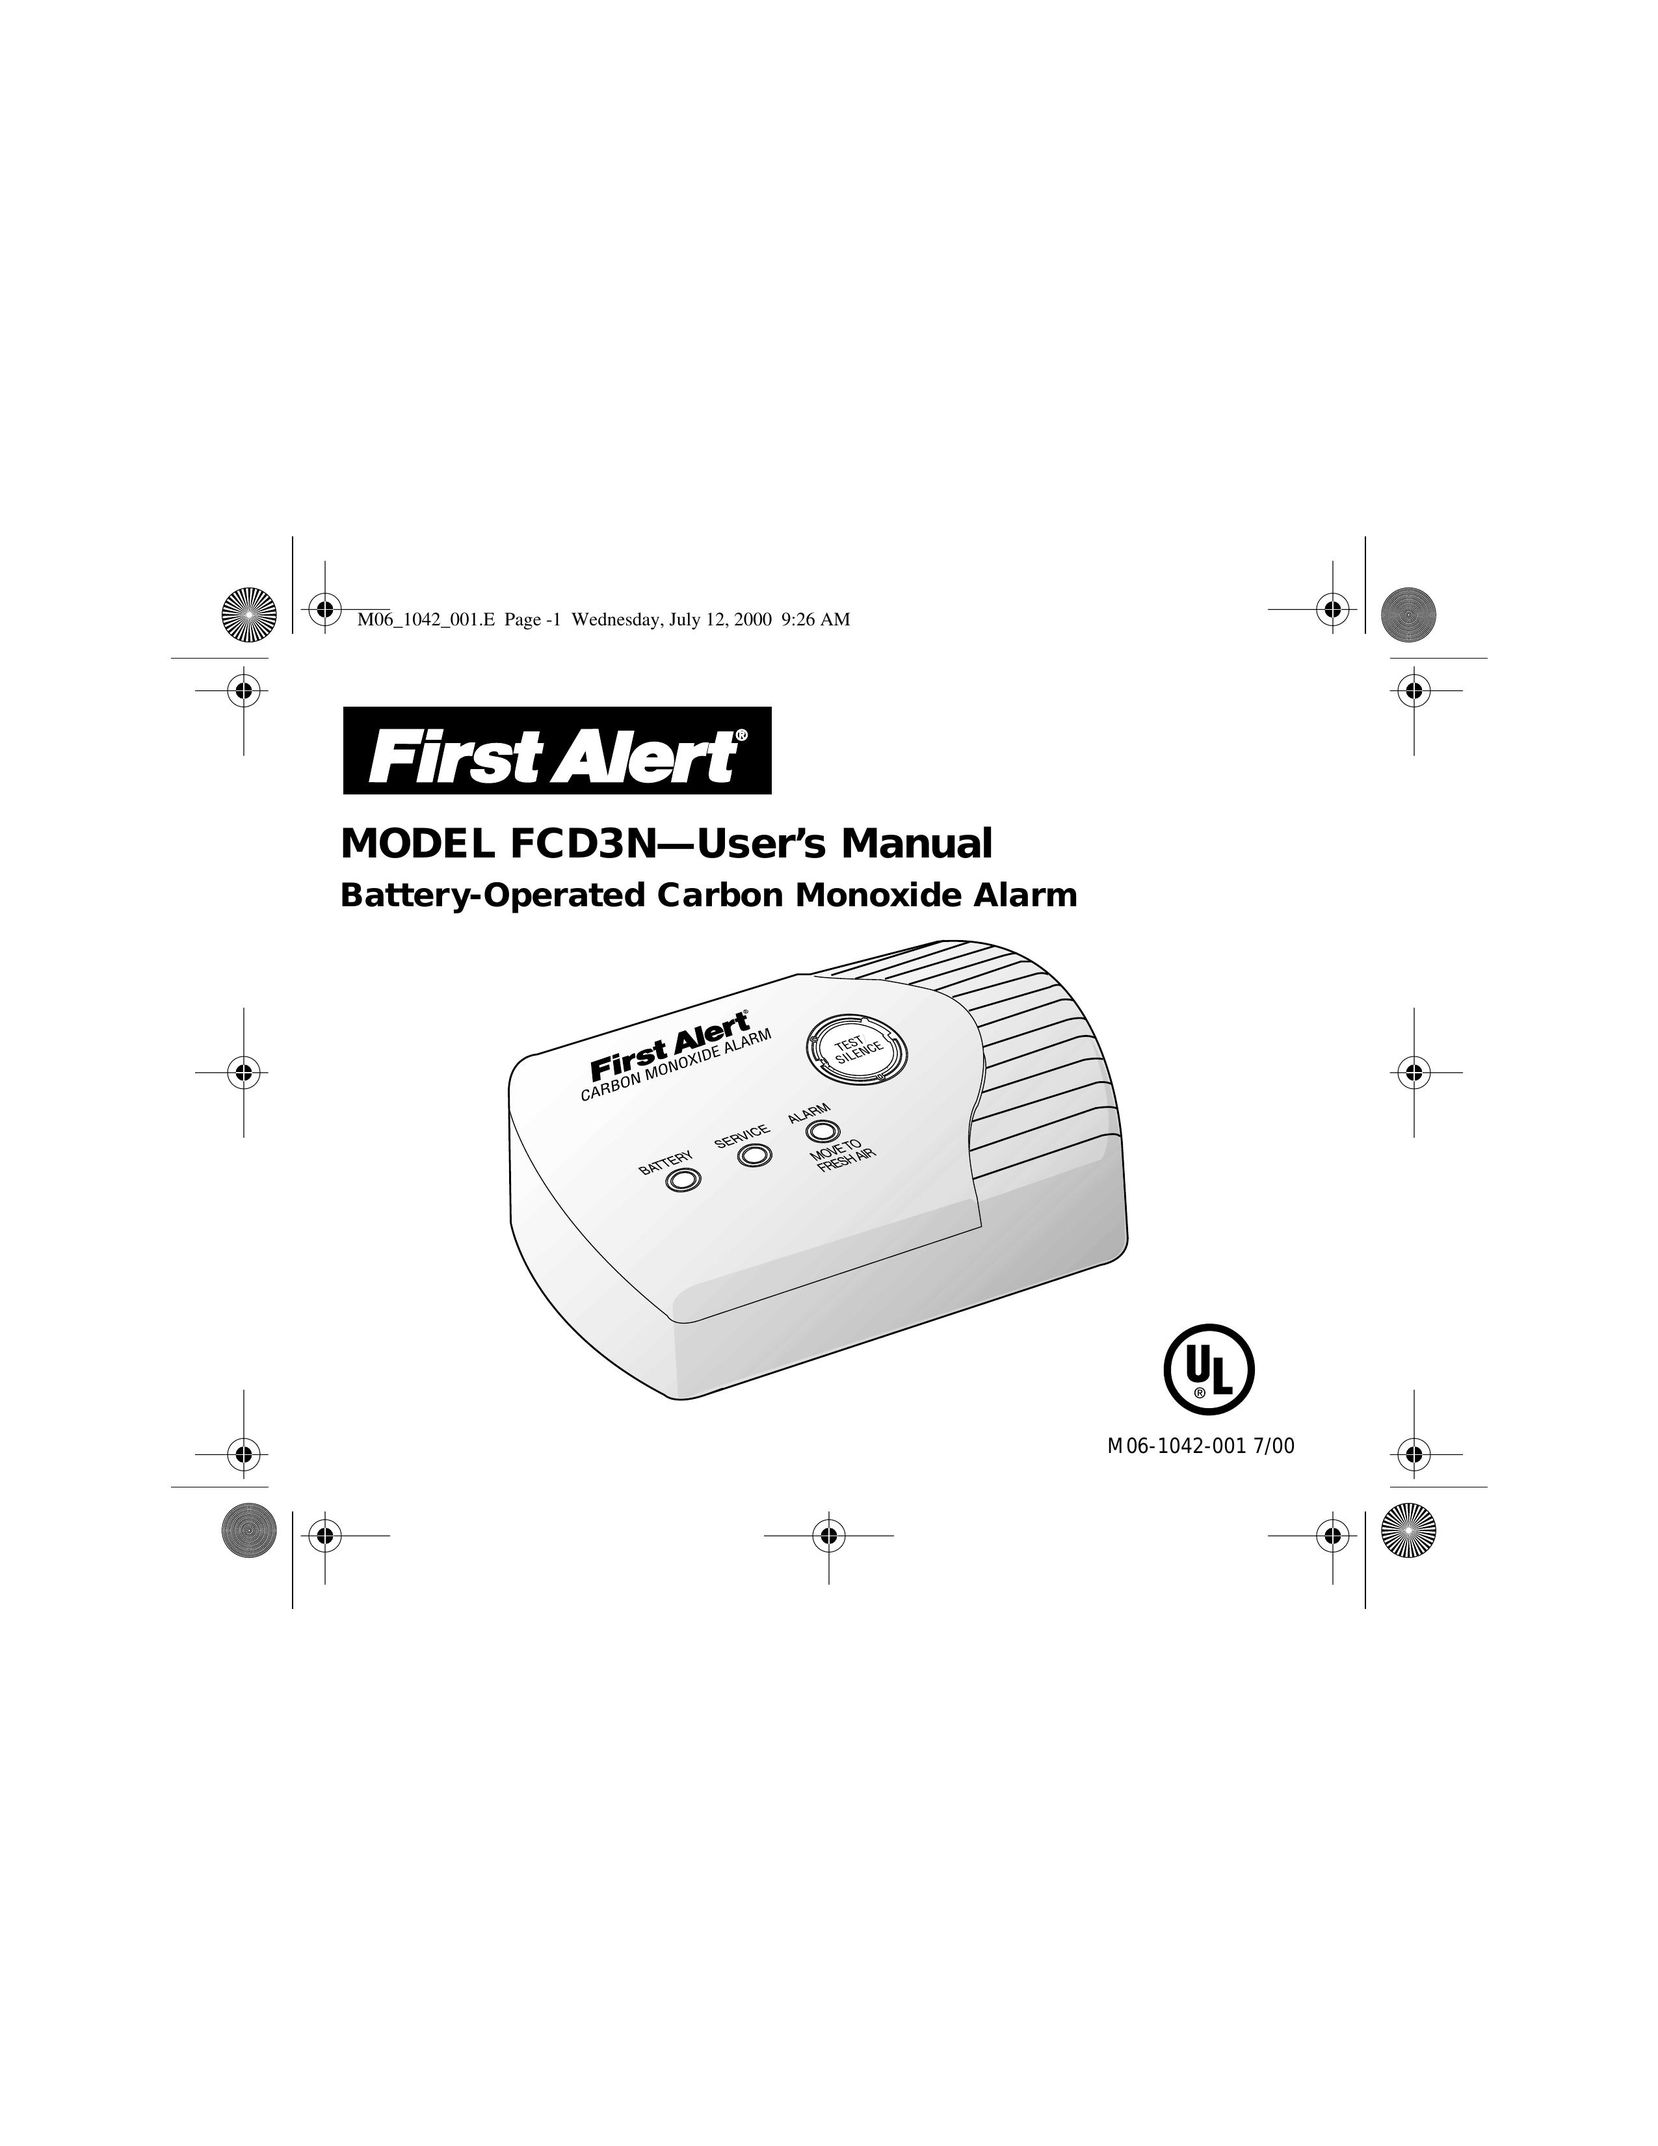 First Alert MODEL FCD3N Carbon Monoxide Alarm User Manual